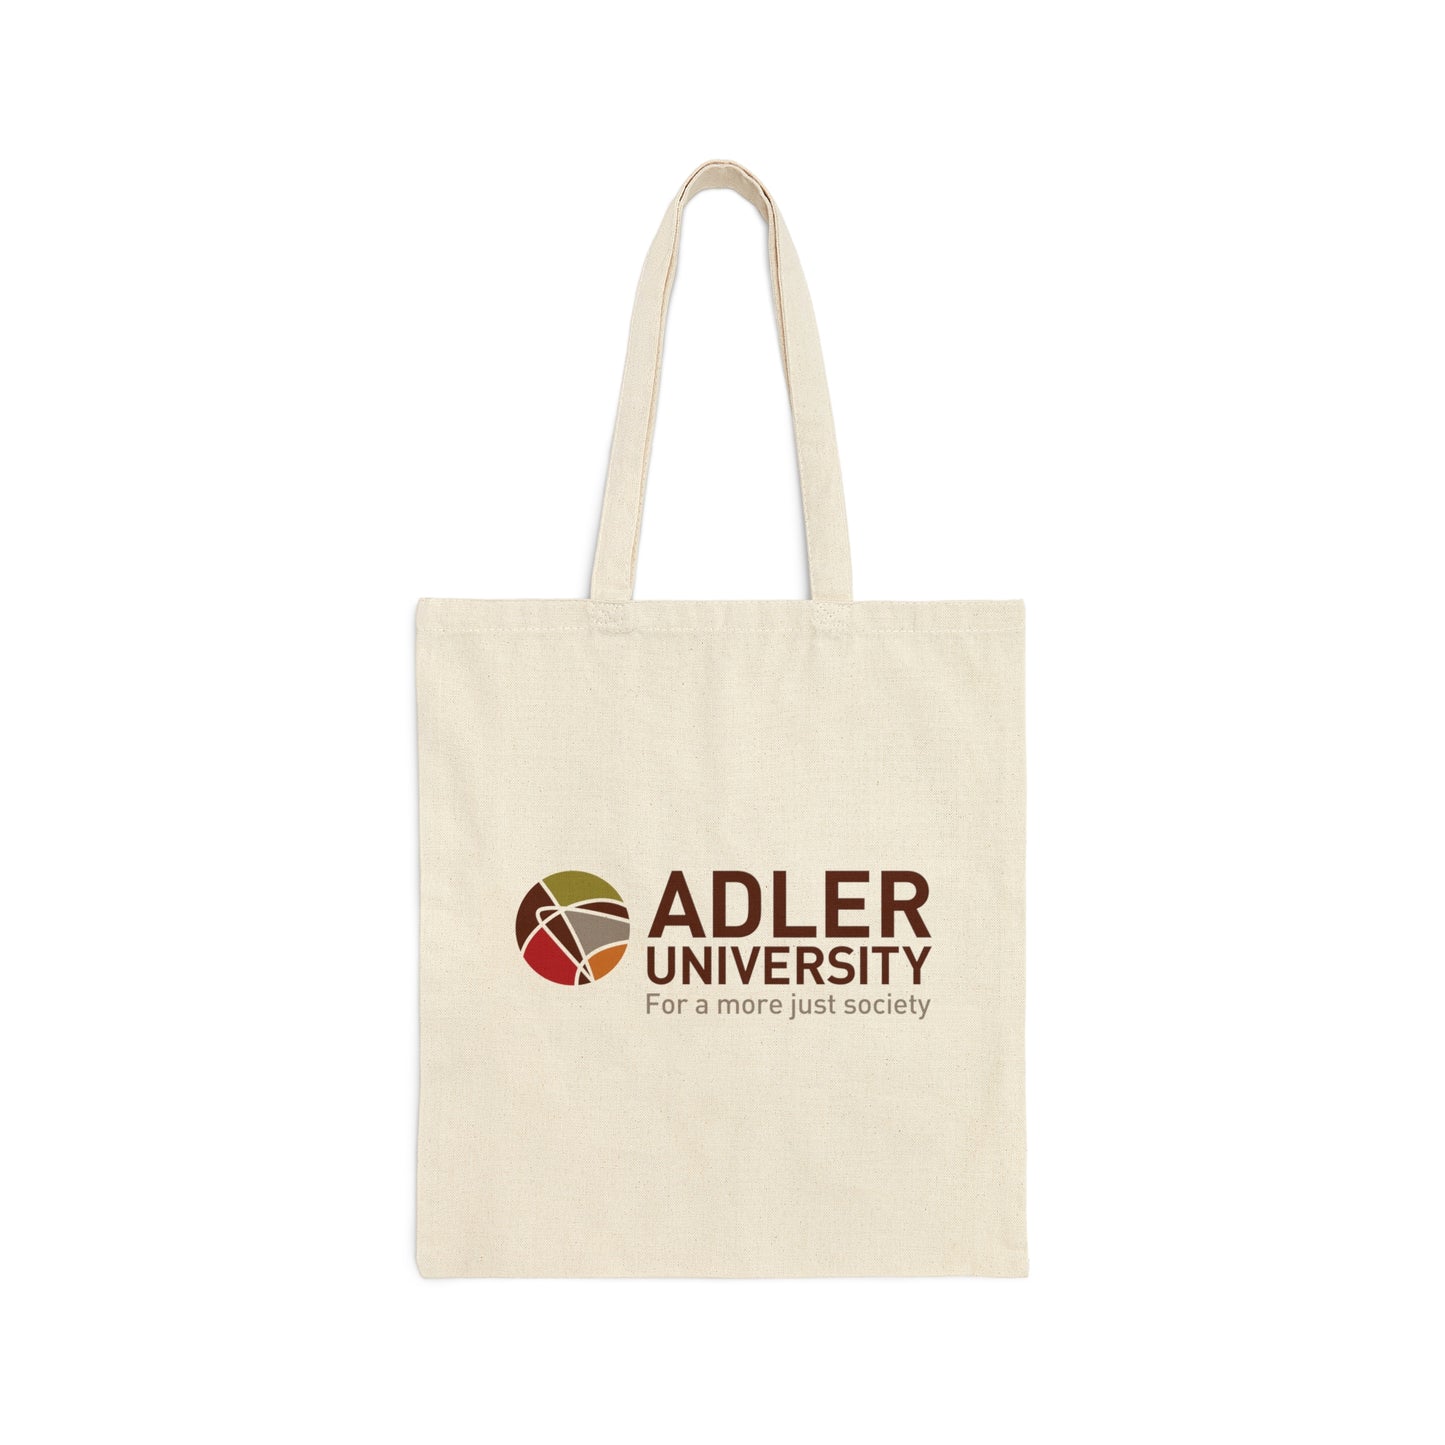 Adler University Cotton Canvas Tote Bag